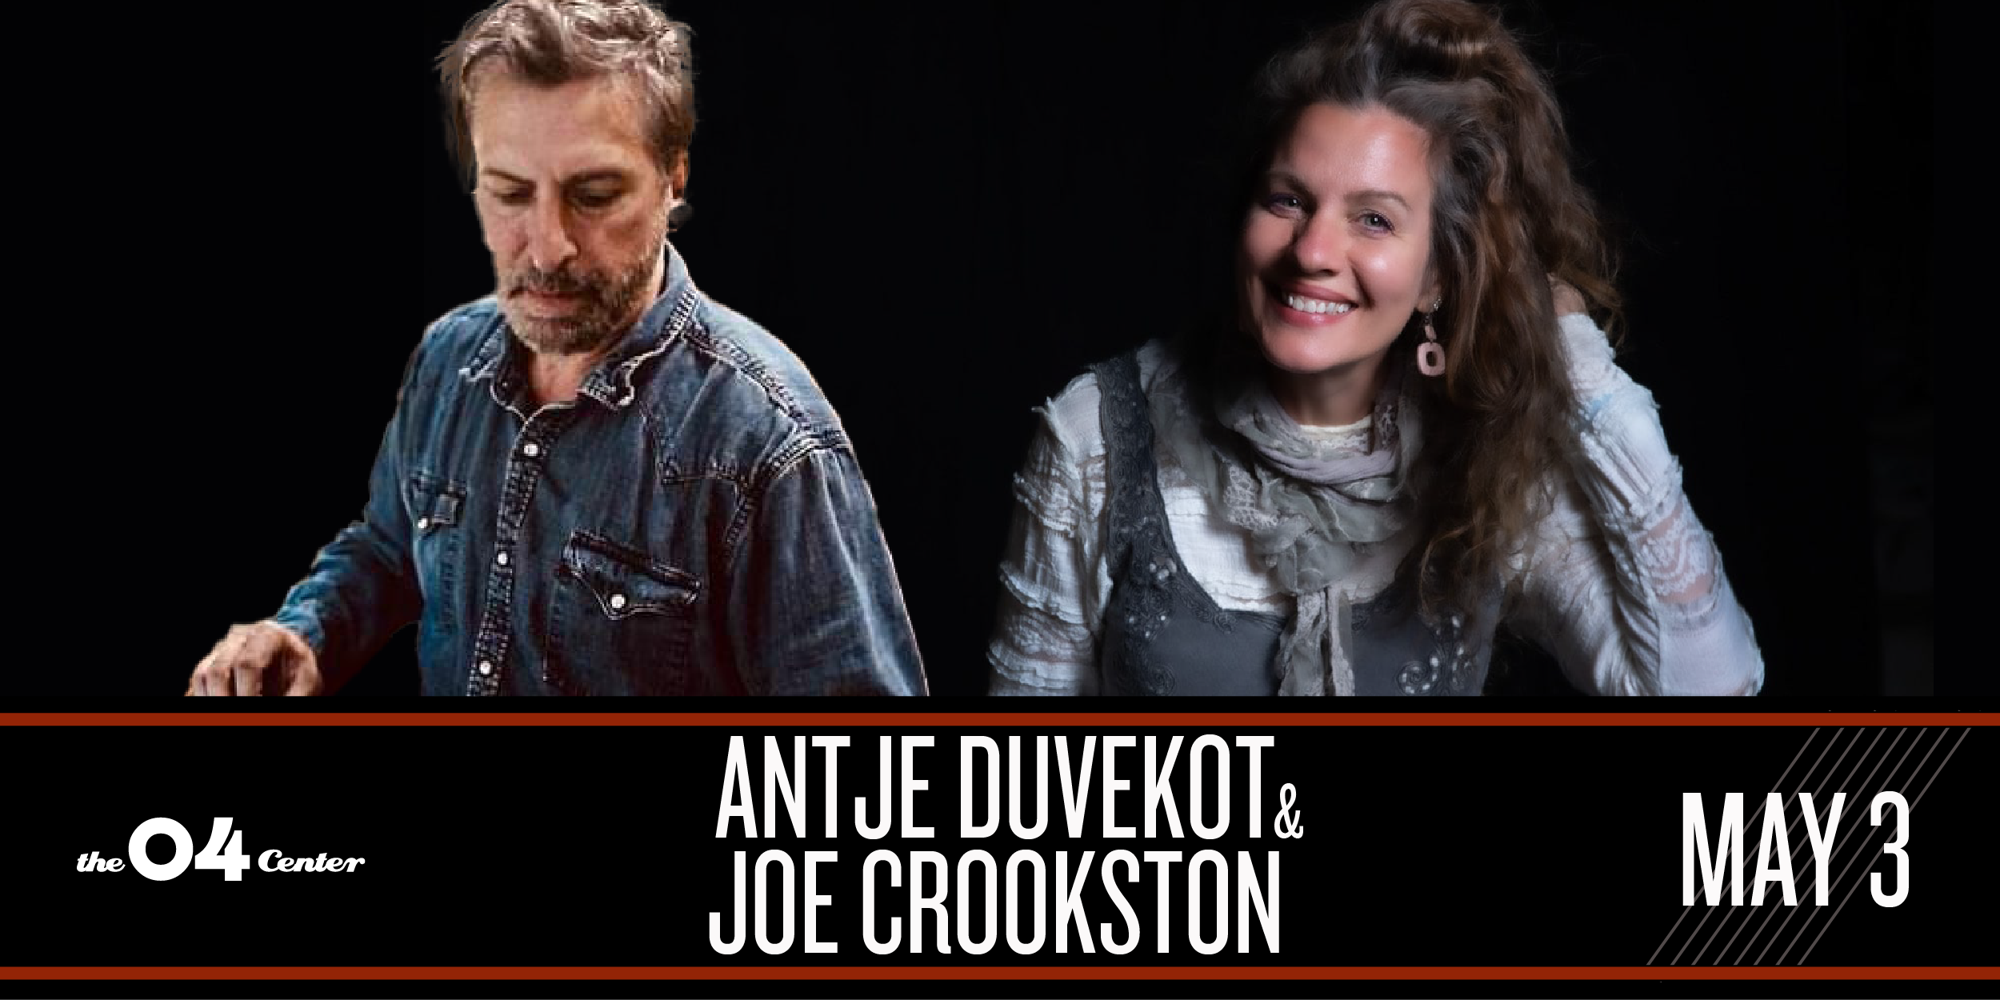  Antje Duvekot & Joe Crookston promotional image